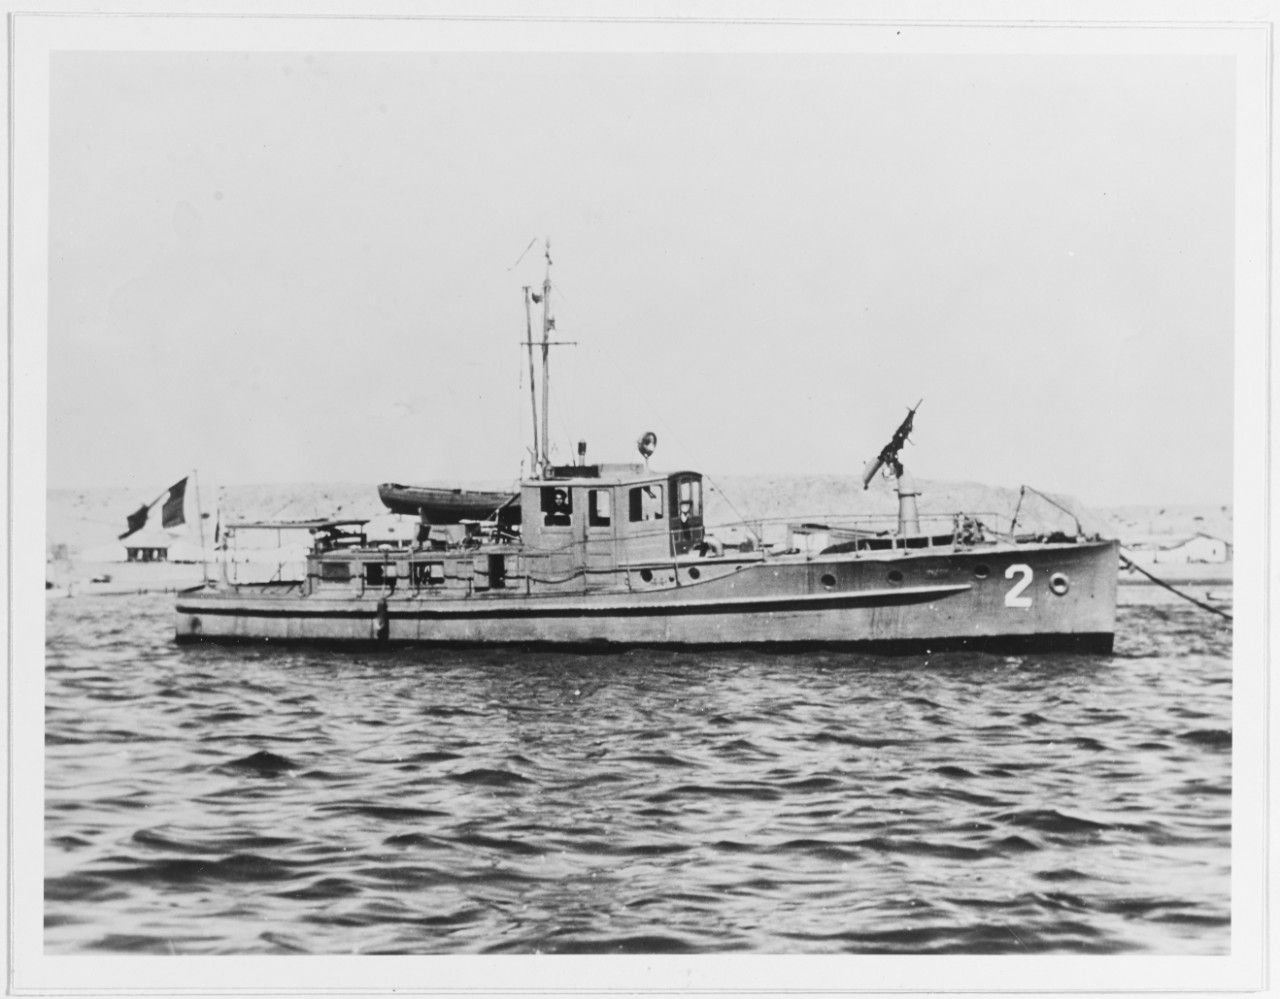 PATRULLERA No. 2 (Peruvian Naval Patrol Boat)